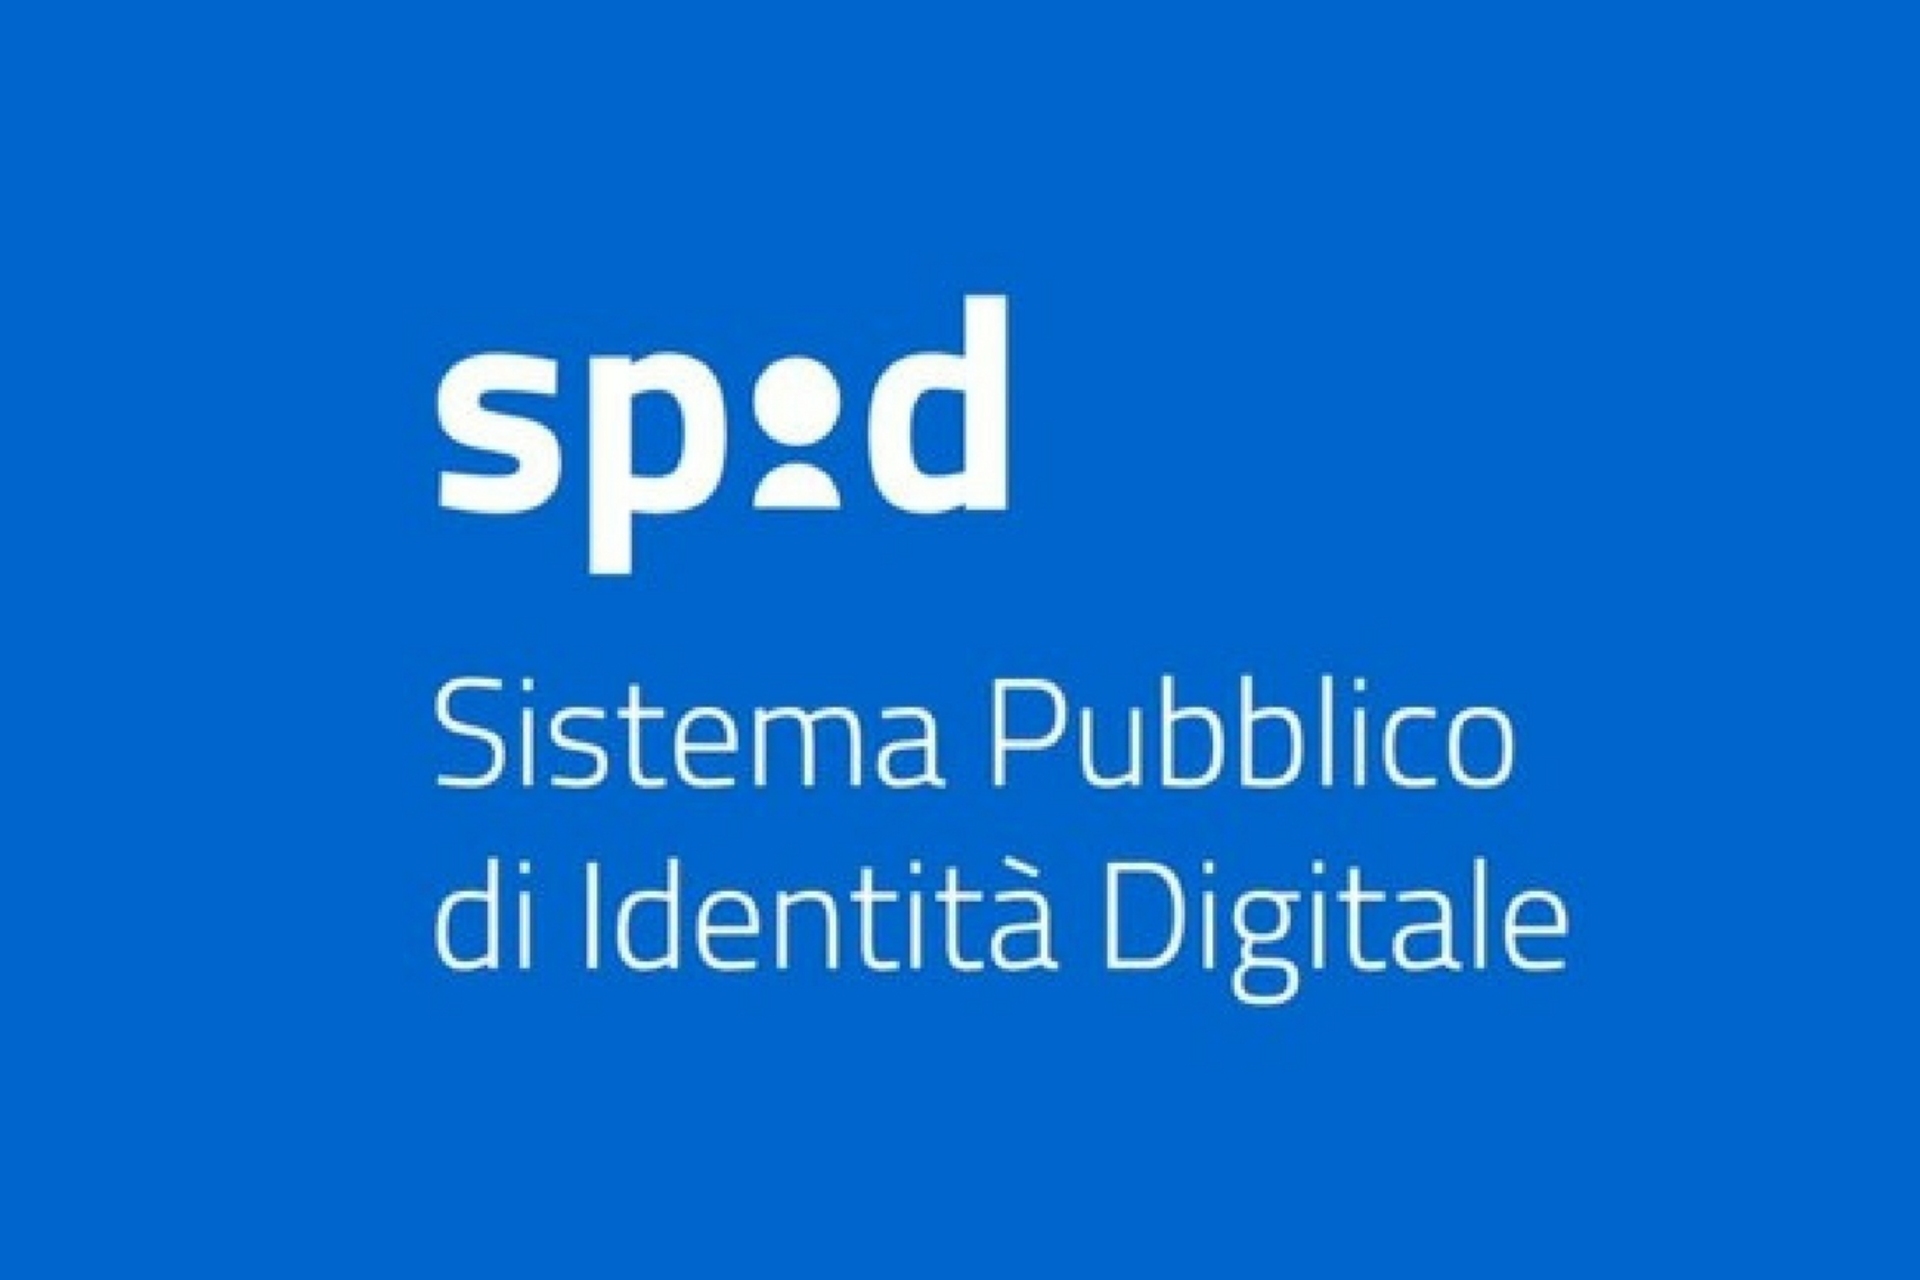 Tehnoloogia: avalik digitaalse identiteedi süsteem (SPID) ei sobi alati vanematele inimestele